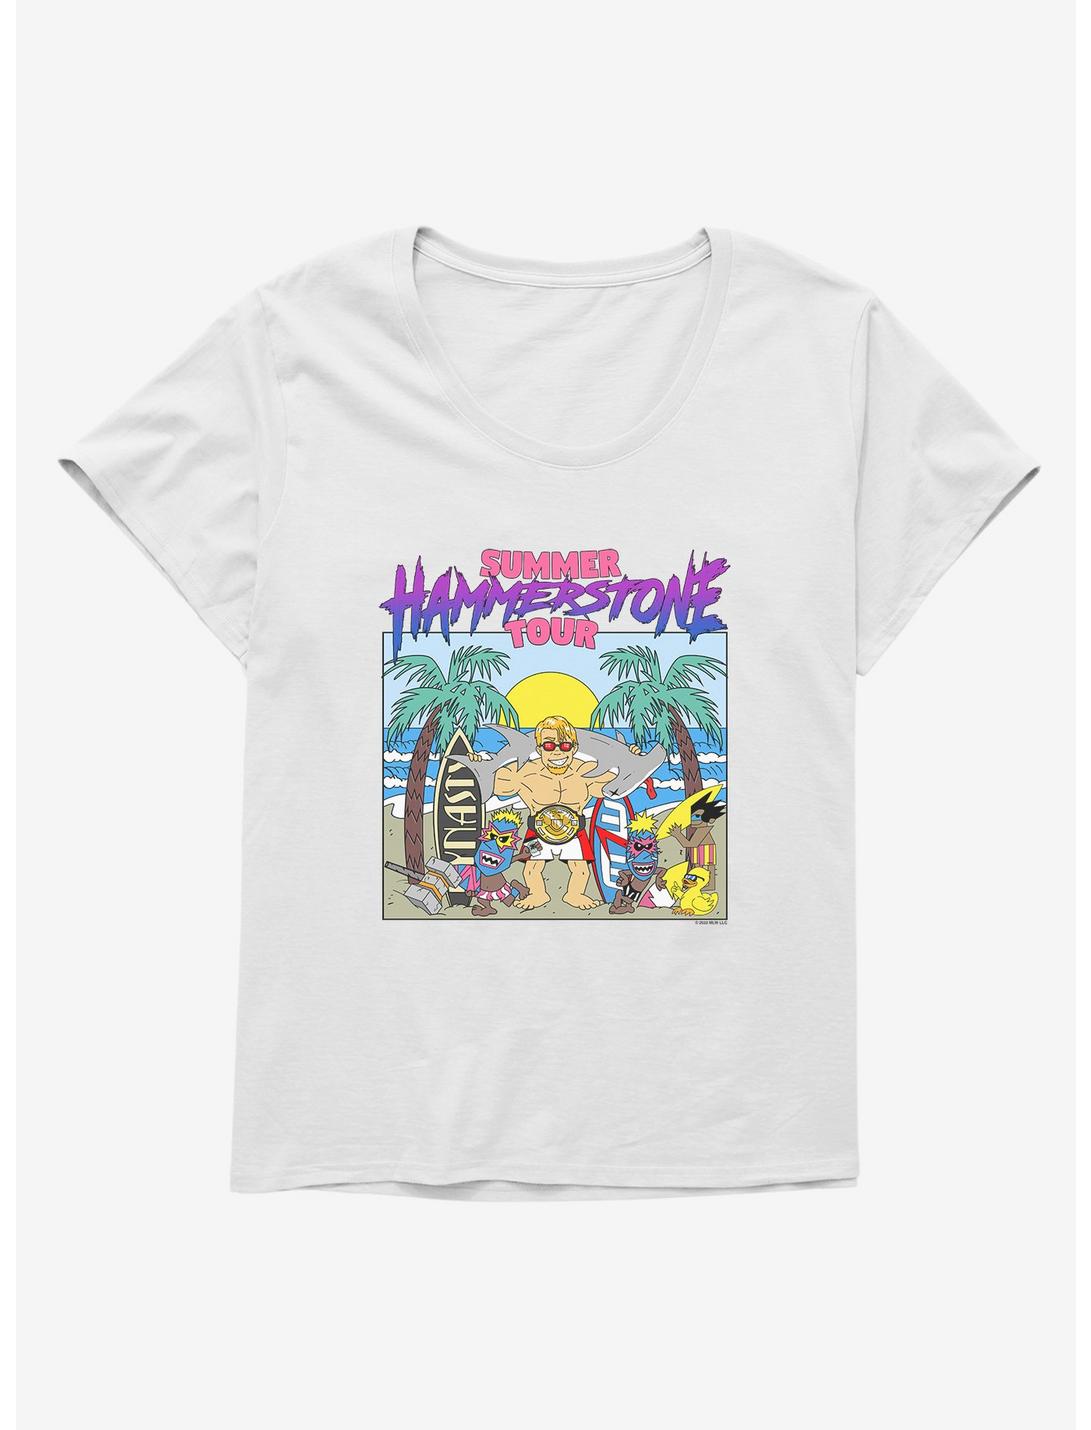 Major League Wrestling Hammerstone Summer Tour Womens T-Shirt Plus Size, WHITE, hi-res